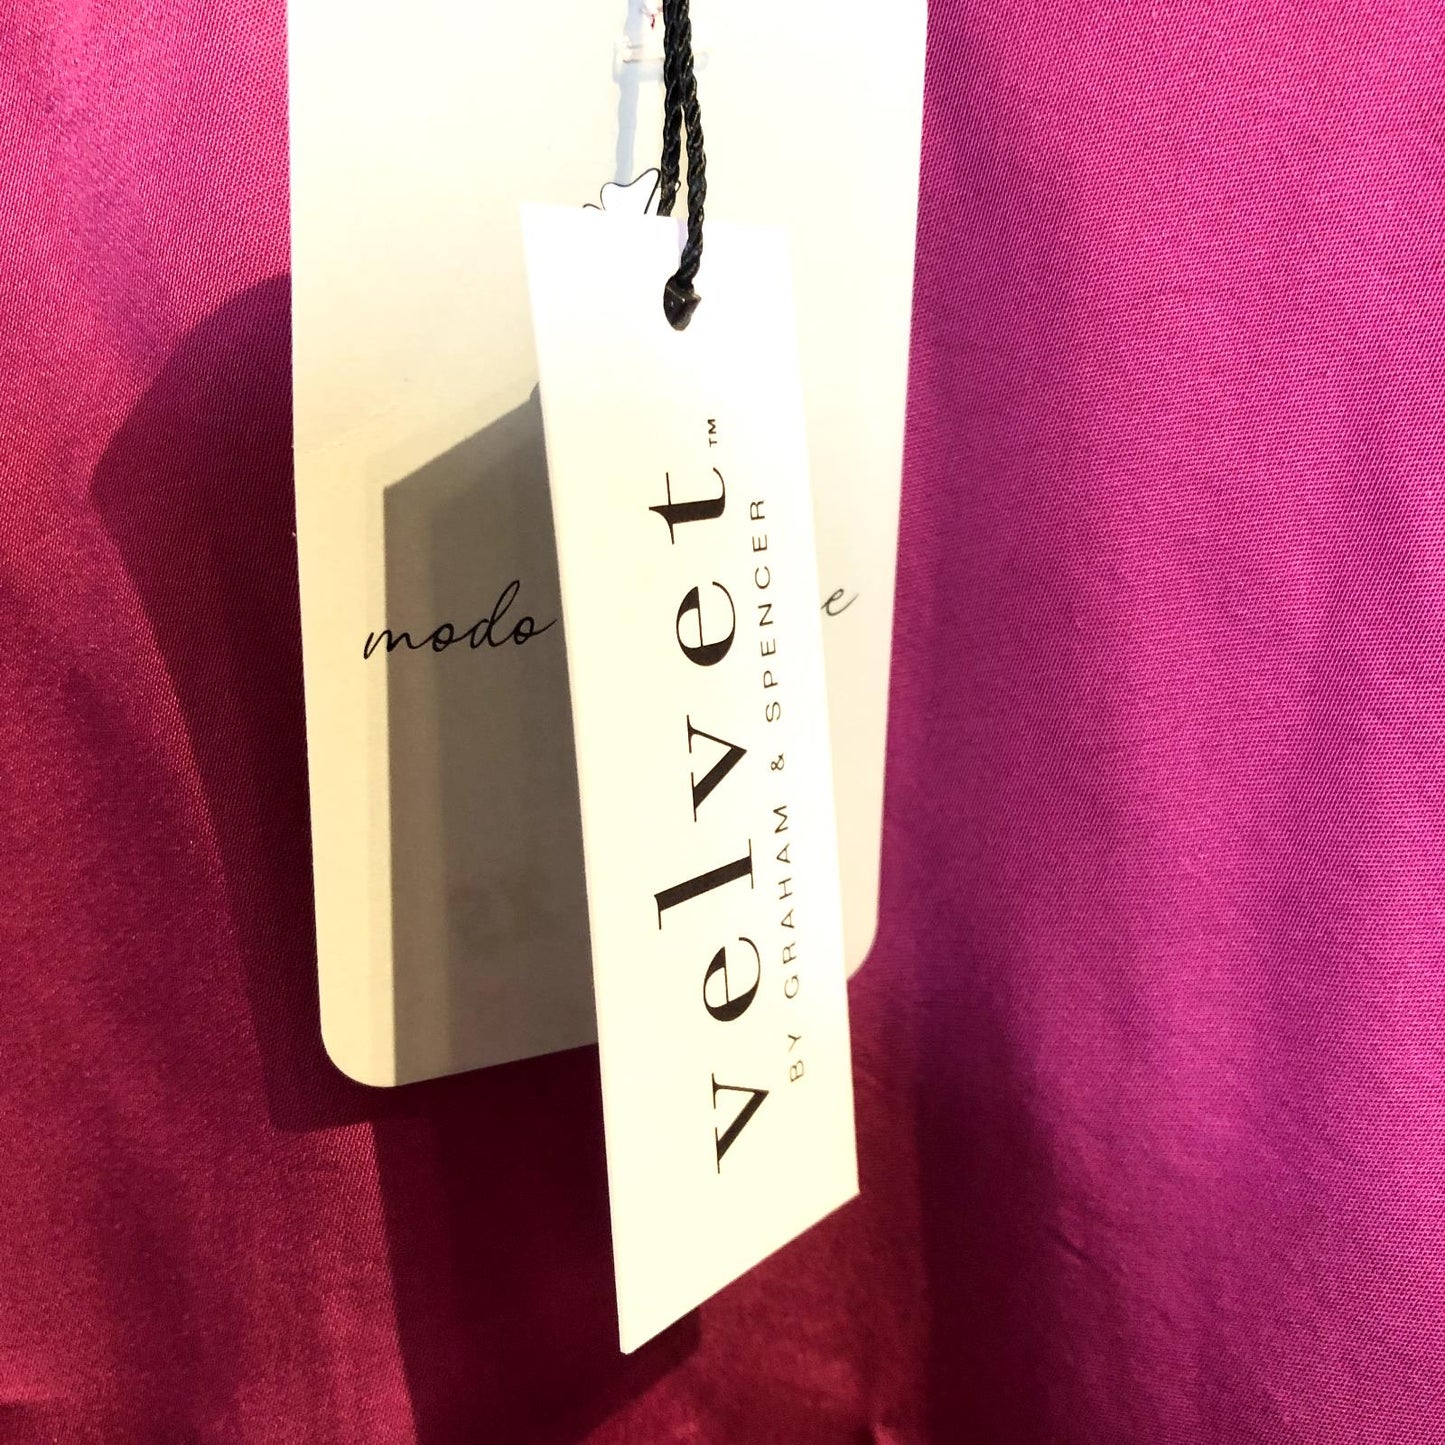 XS - Velvet Graham & Spencer Fuschia Pink NEW $150 Silky Short Sleeve Top 0813CP